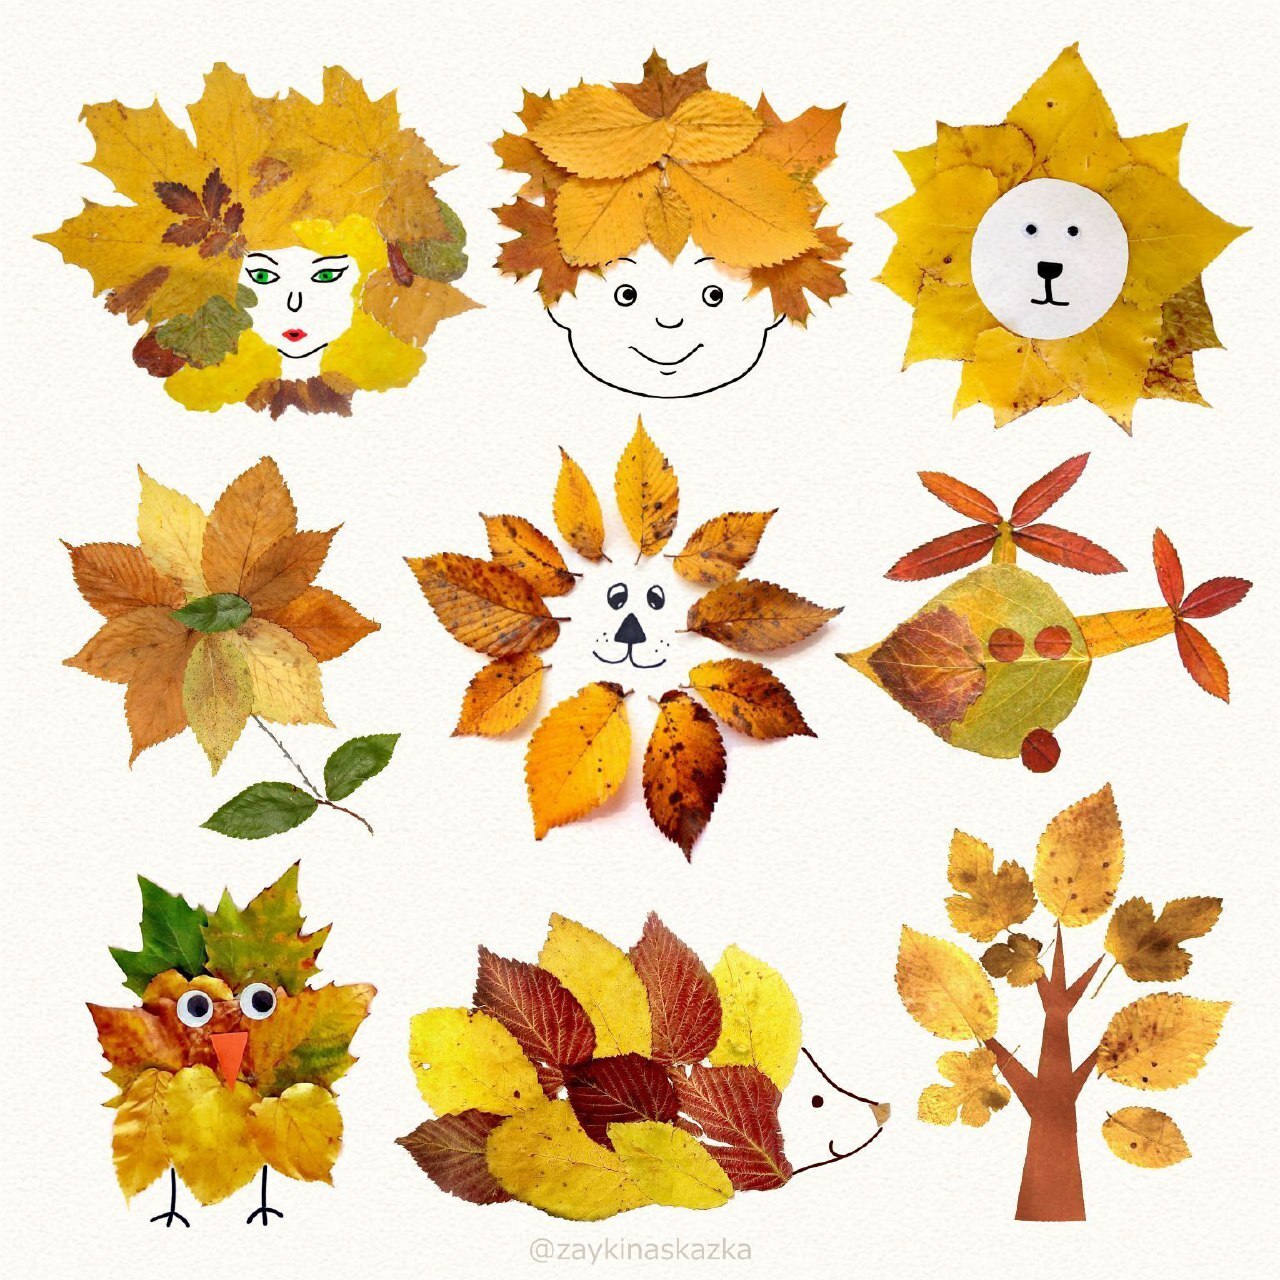 Осенние поделки: аппликации из осенних листьев. Коллаж из осенних листьев